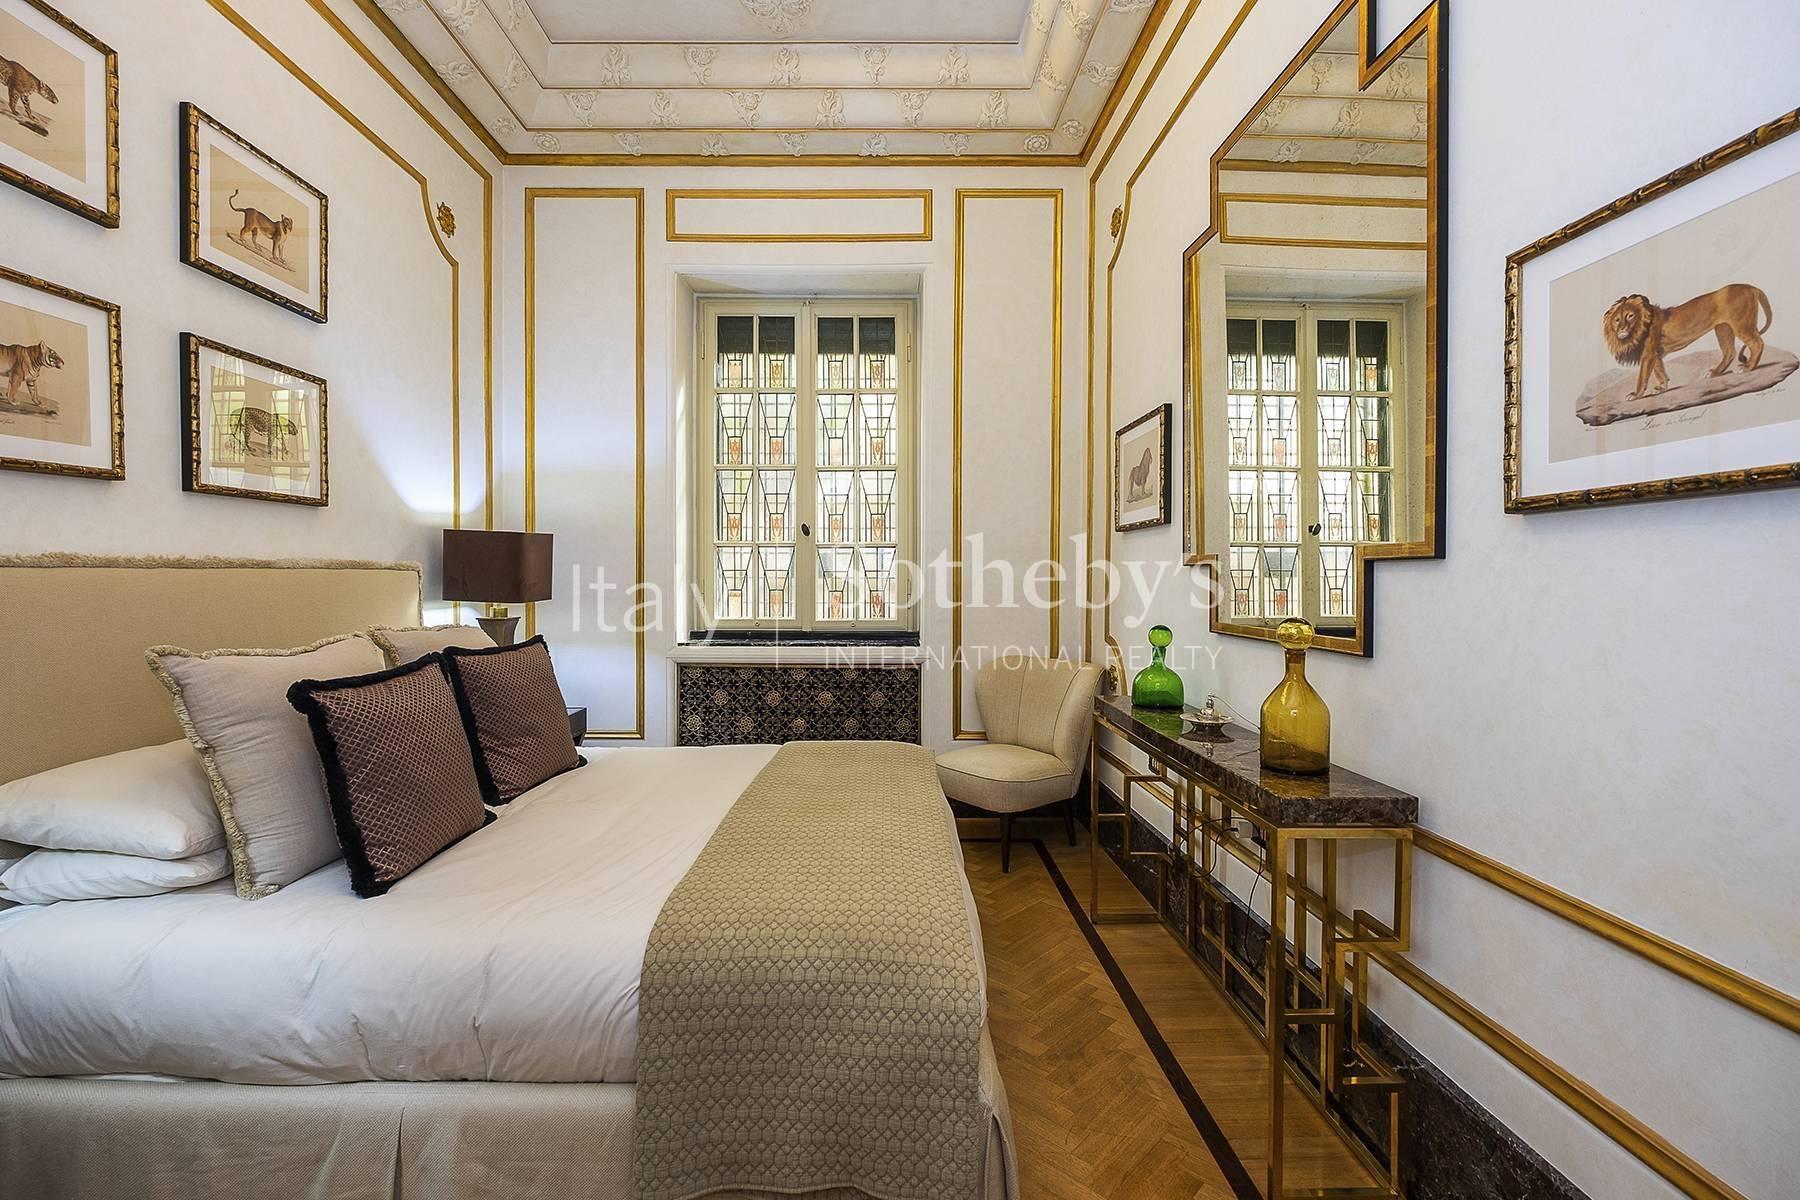 Prestigioso appartamento nei pressi di Villa Borghese - 13